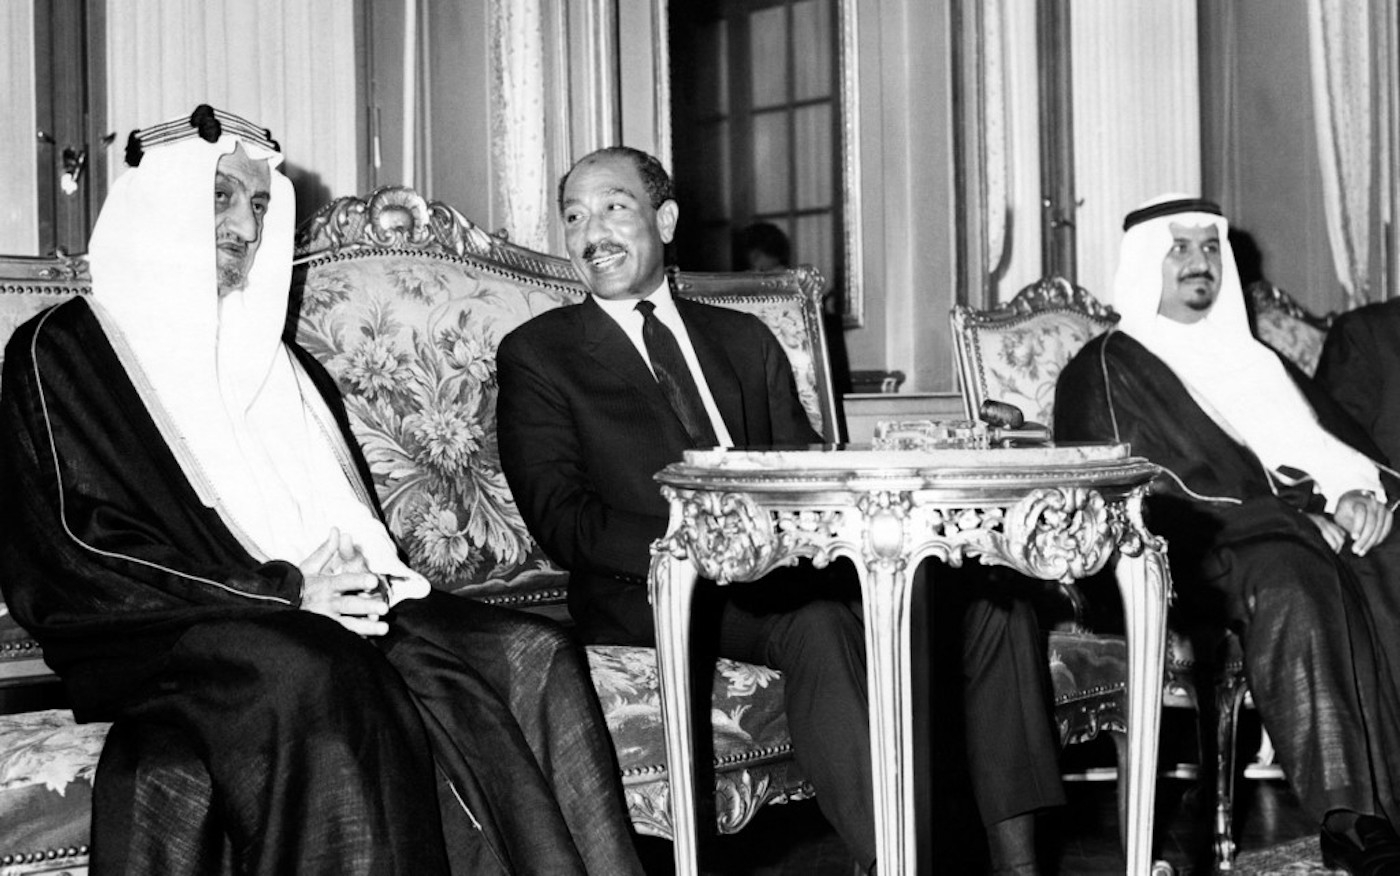 Le roi d’Arabie saoudite Fayçal ben Abdelaziz al-Saoud (à gauche) s’entretient avec le président égyptien Anouar al-Sadate, le 5 février 1974, au Caire. (AFP)